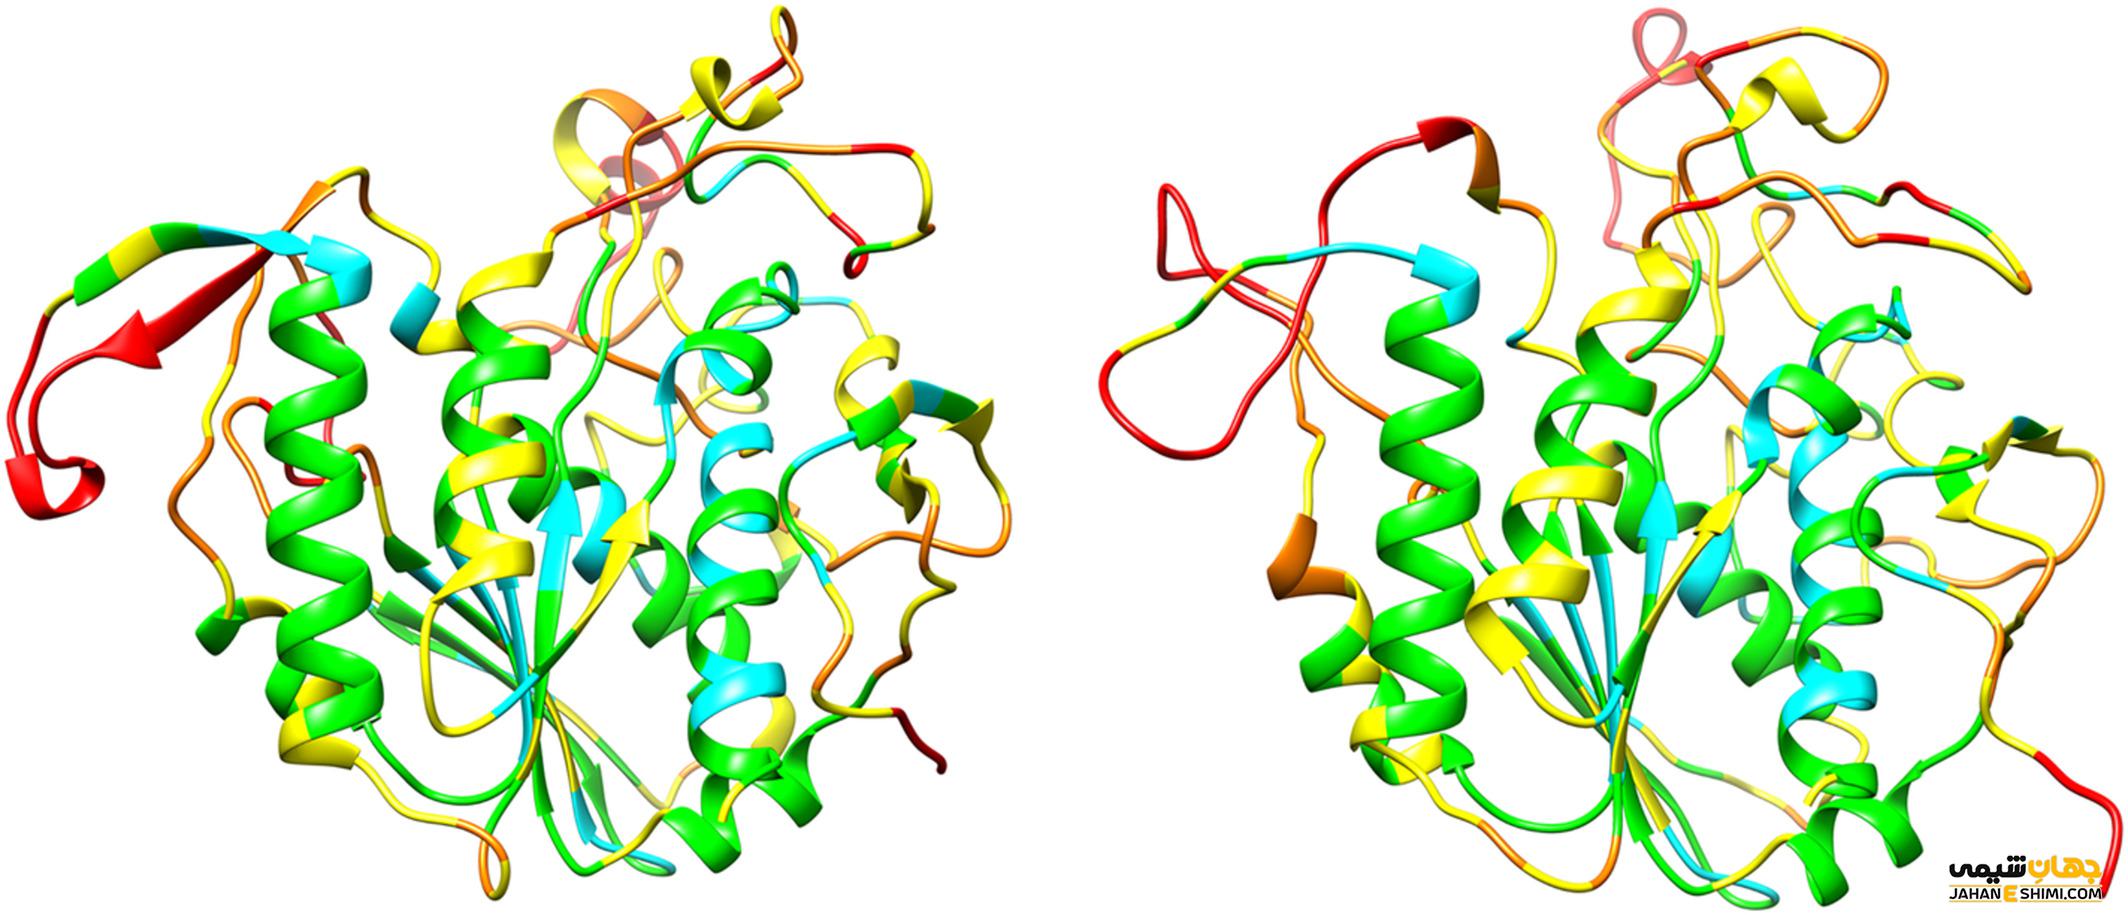 مهندسی پروتئین چیست؟ کاربردهای مهندسی پروتئین